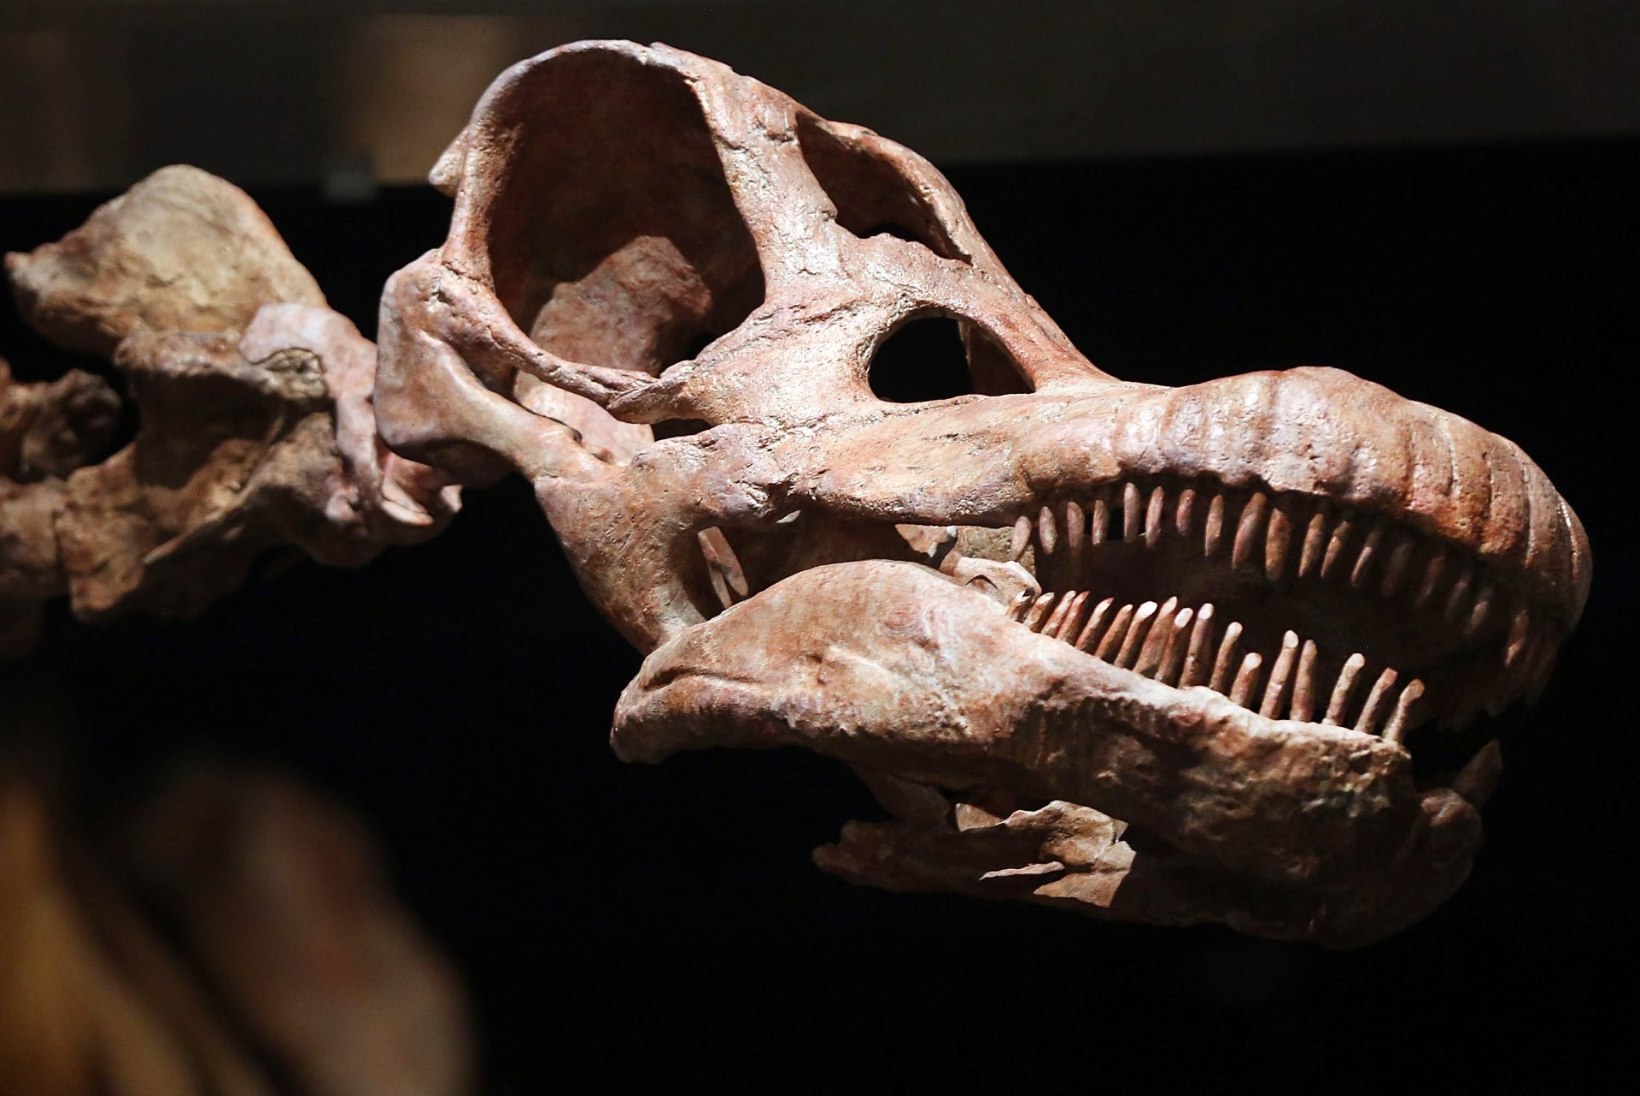 ASTEROID PANI VIIMASE PÕNTSU: dinosaurused olid hakanud välja surema juba enne suurt katastroofi 